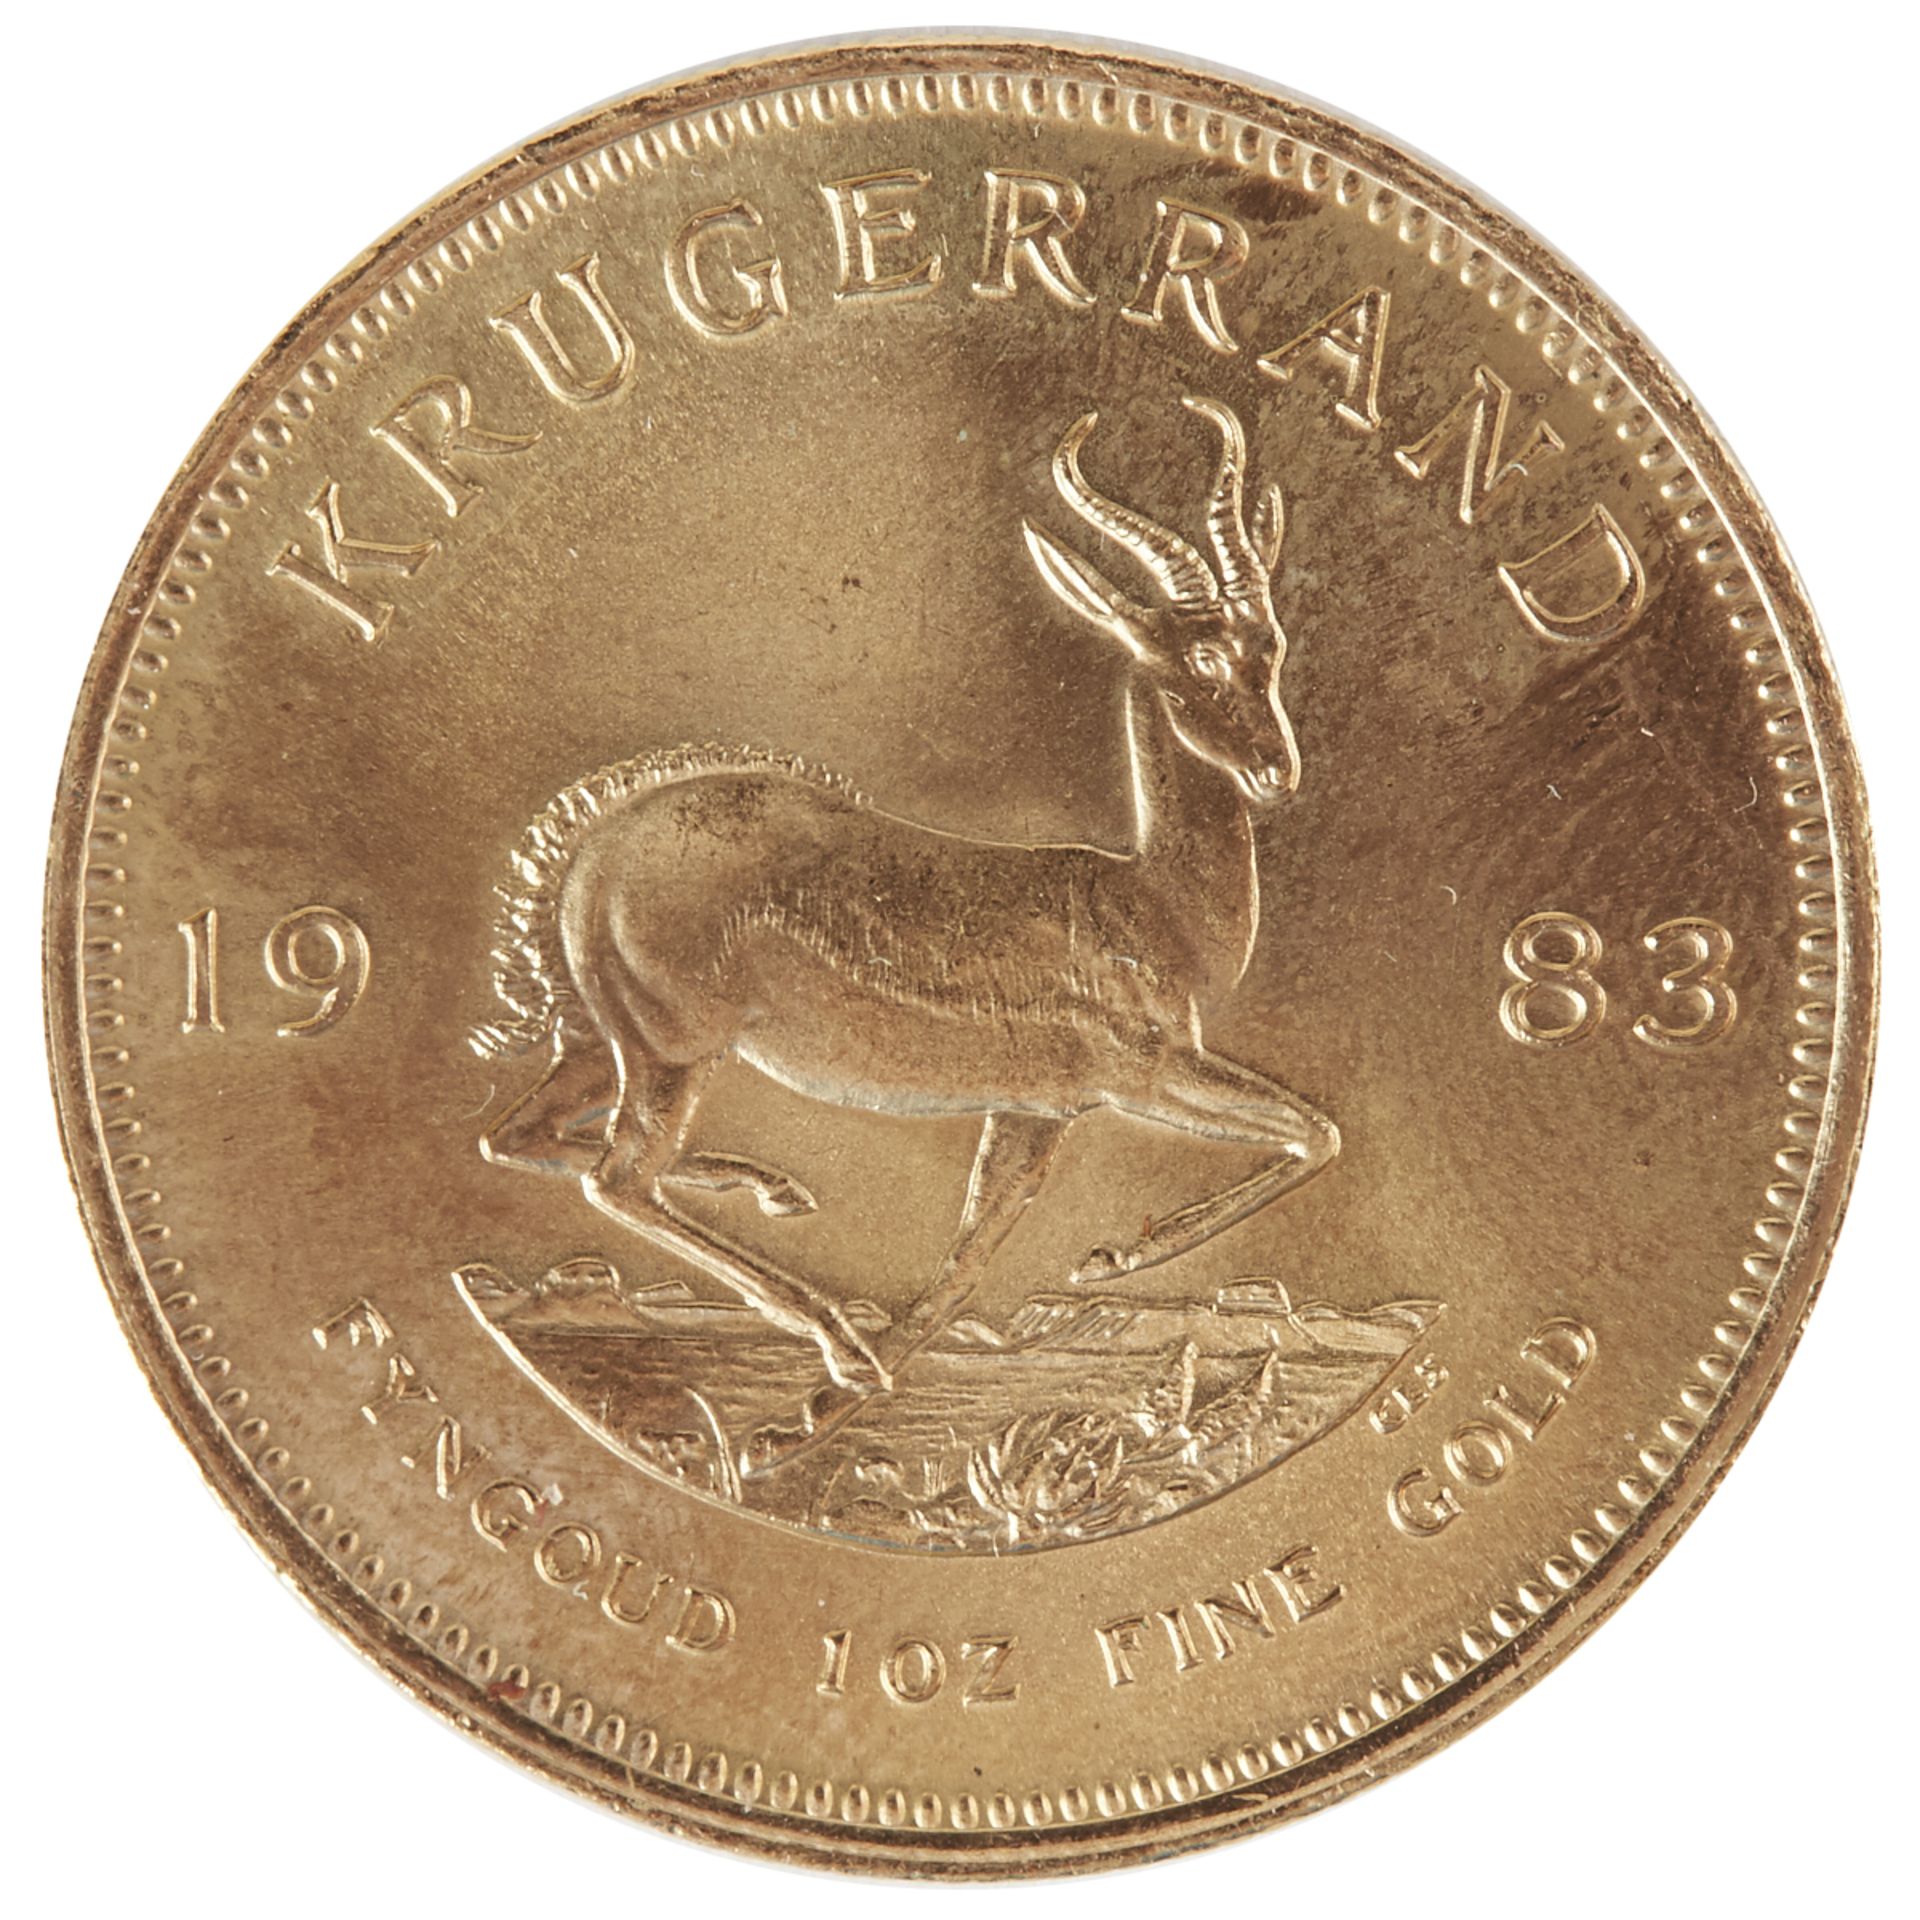 South African 1983 Krugerrand Gold Coin - Bild 2 aus 2